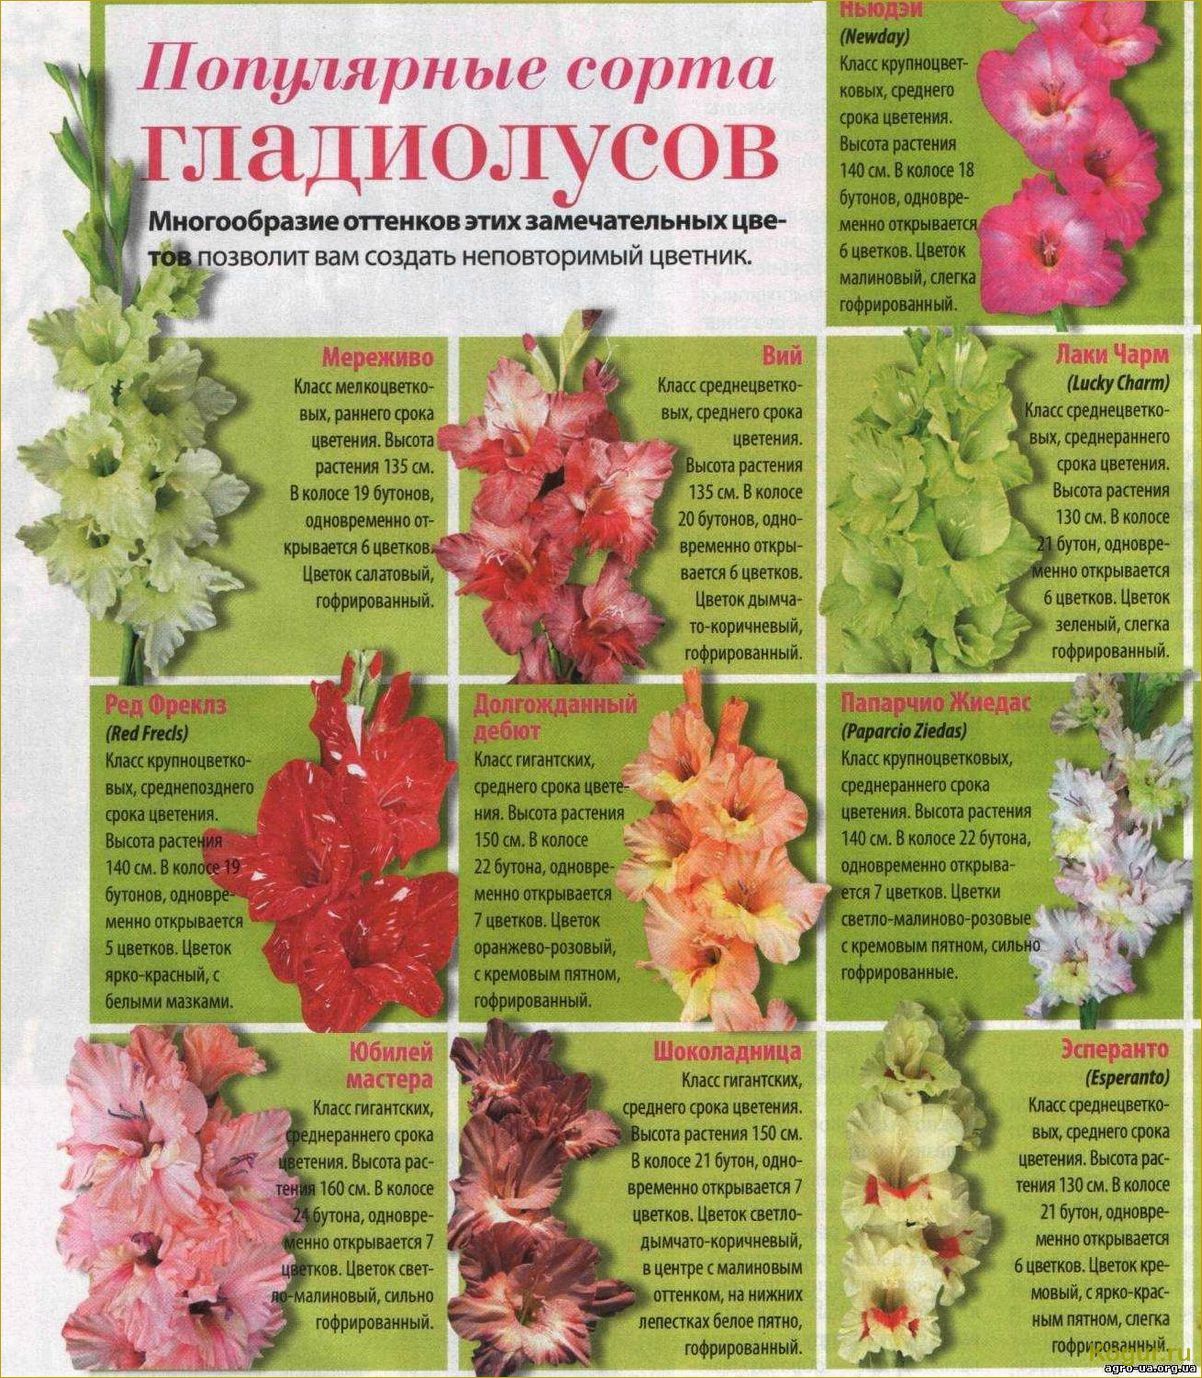 Гладиолус — посадка и уход в открытом грунте, лучшие сорта, размножение цветка и болезни